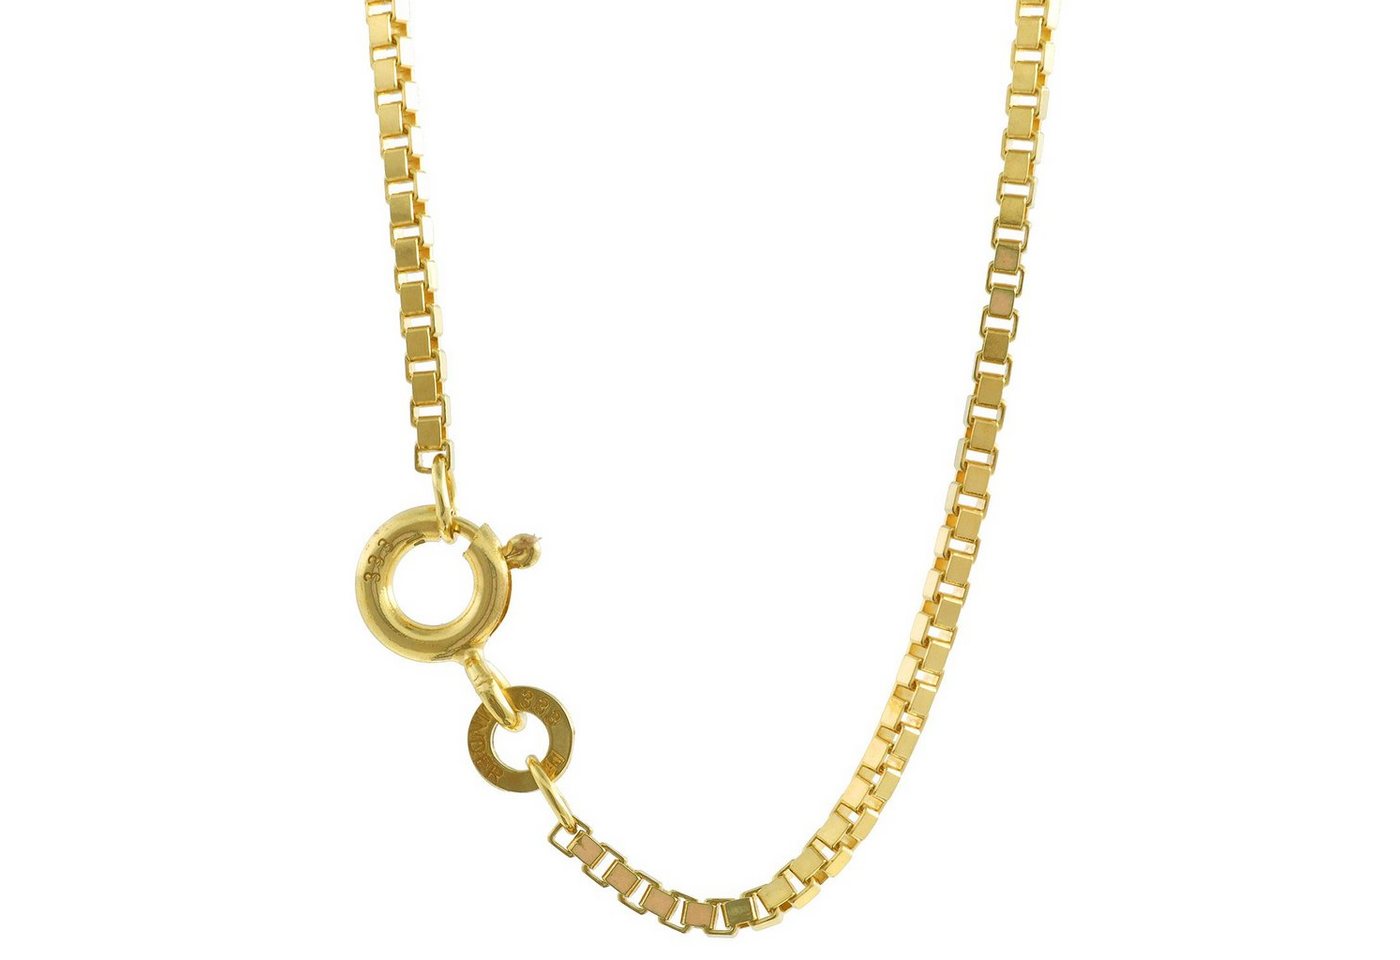 HOPLO Goldkette Goldkette Venezianerkette Länge 40cm - Breite 1,4mm - 333-8 Karat Gold, Made in Germany von HOPLO